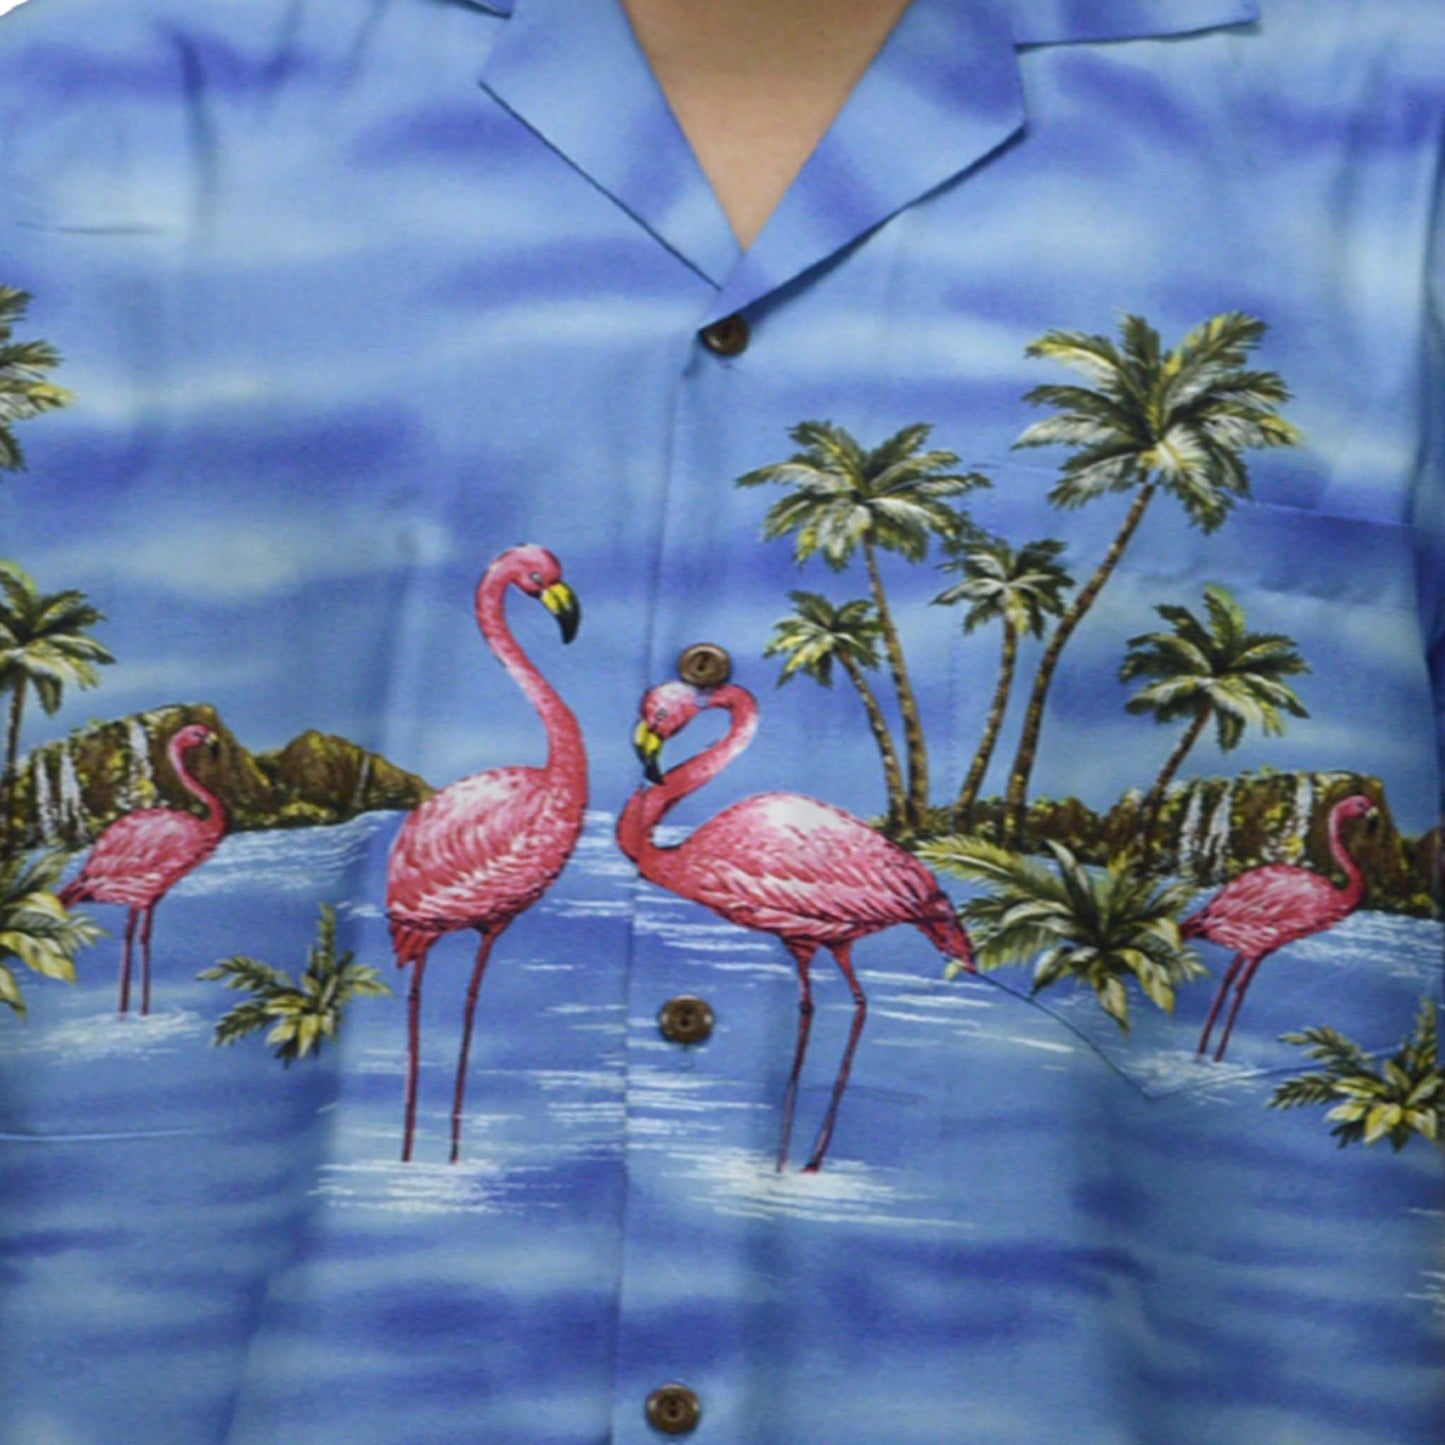 Ky's Hawaiian Cotton Shirt Pink Flamingo-Navy